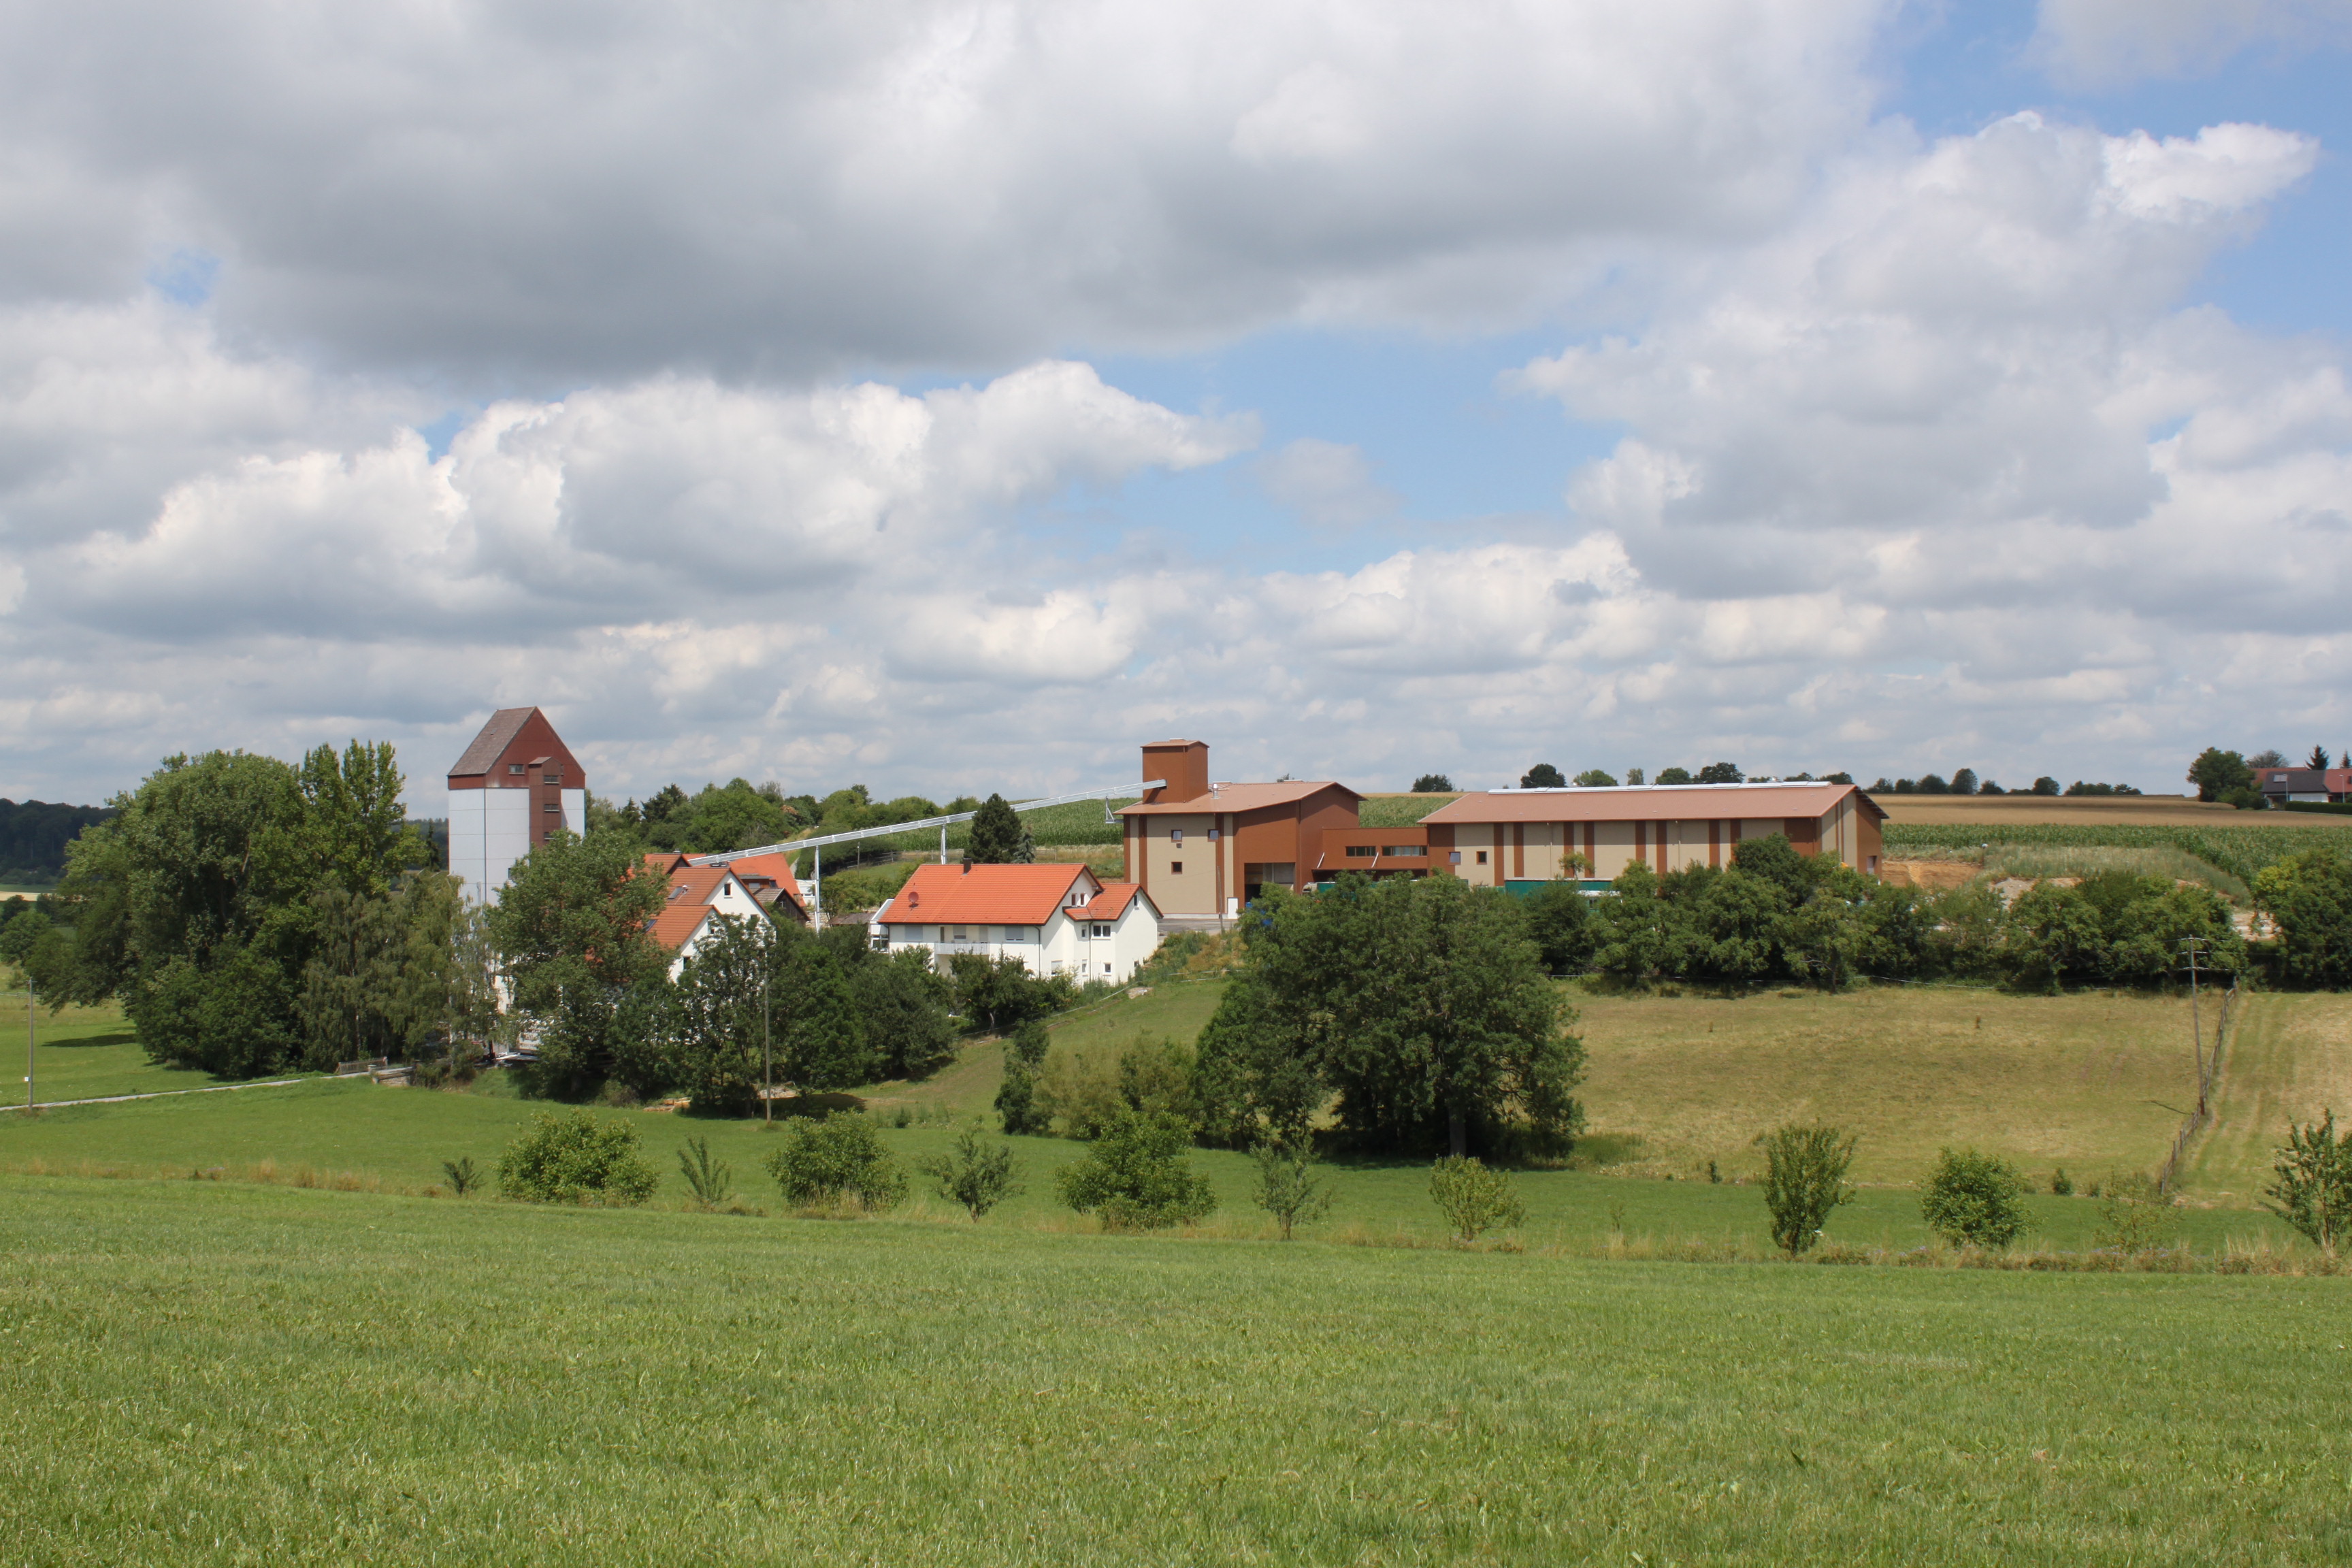 Altdorfer Mühle